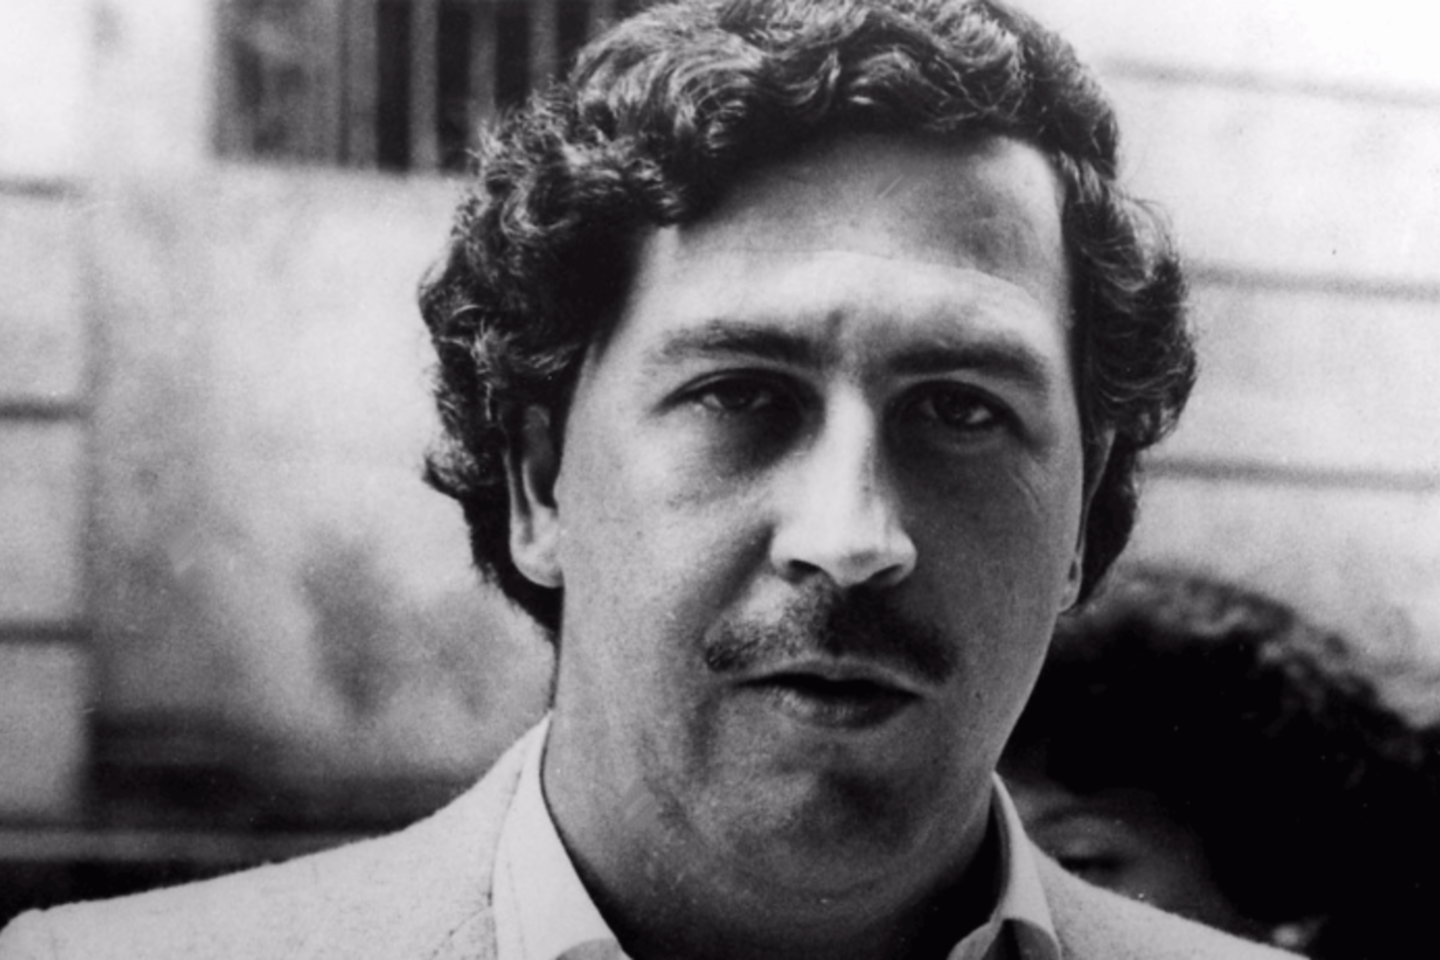  P.Escobaras narkotikais vertėsi nuo 22 metų.